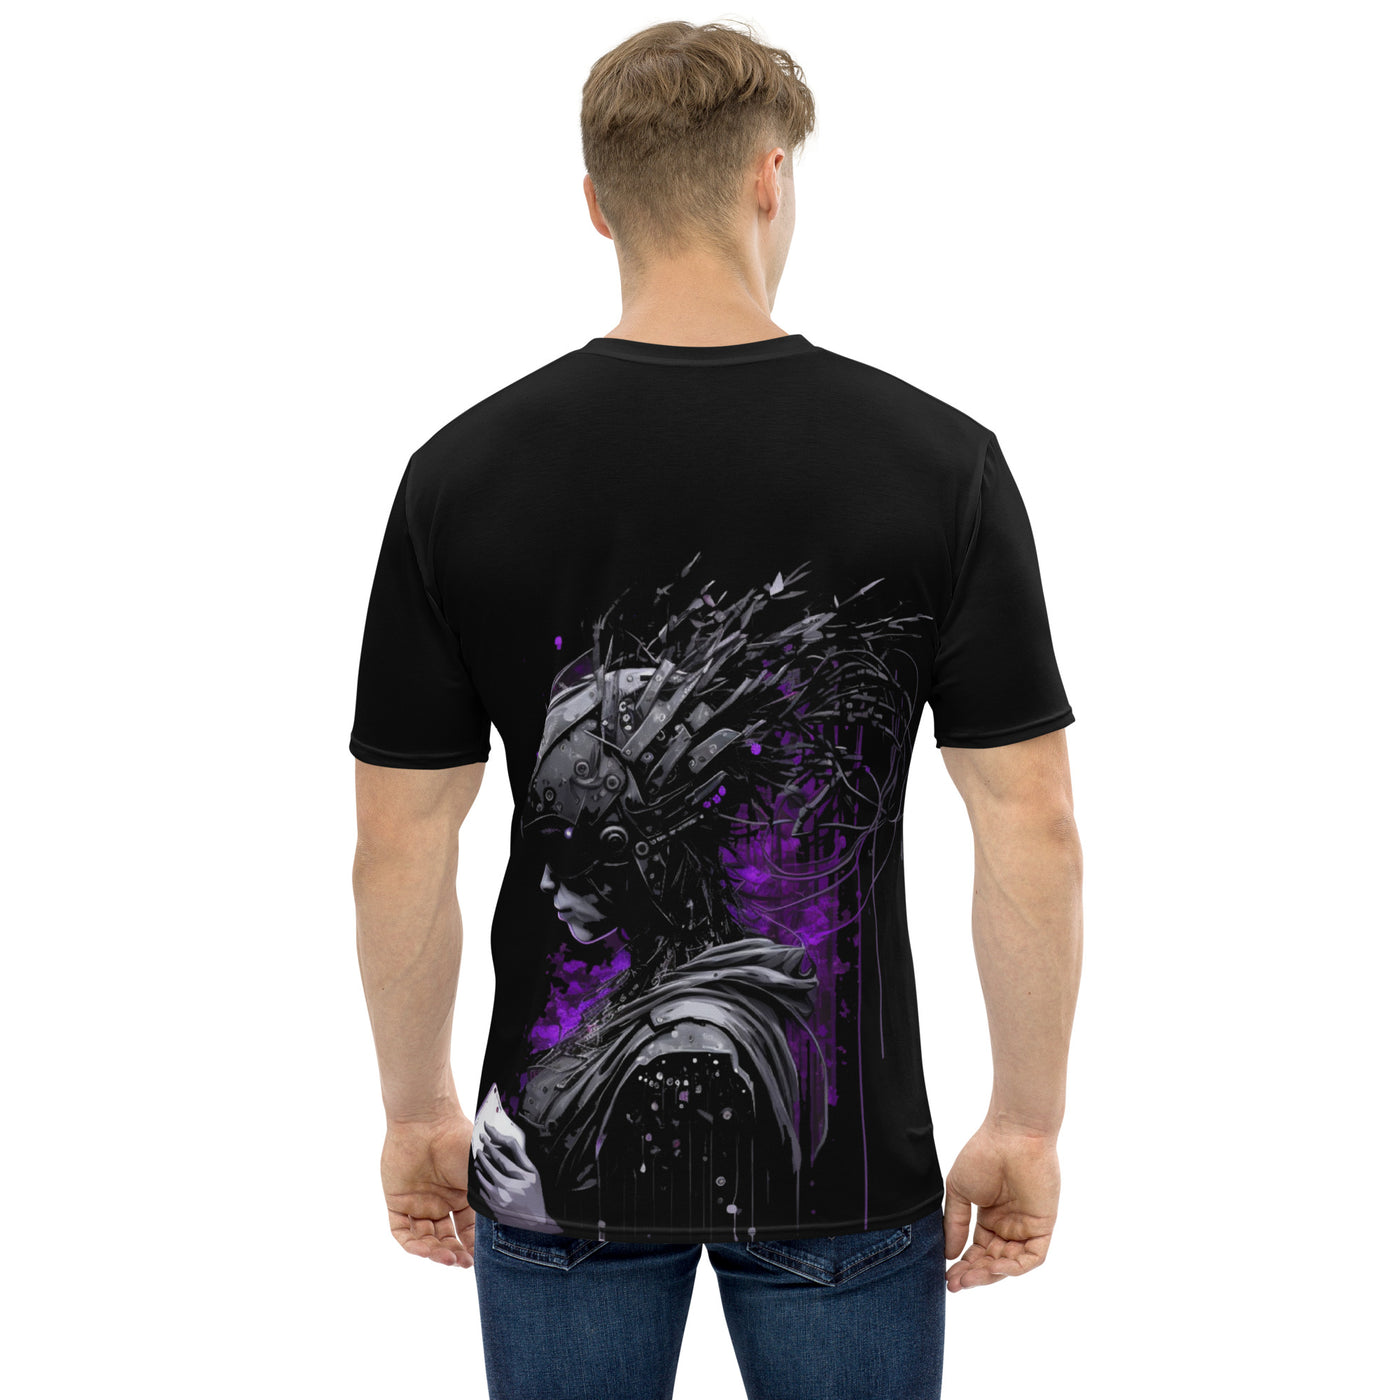 Cyberware assassin v42 - Men's t-shirt (back print)